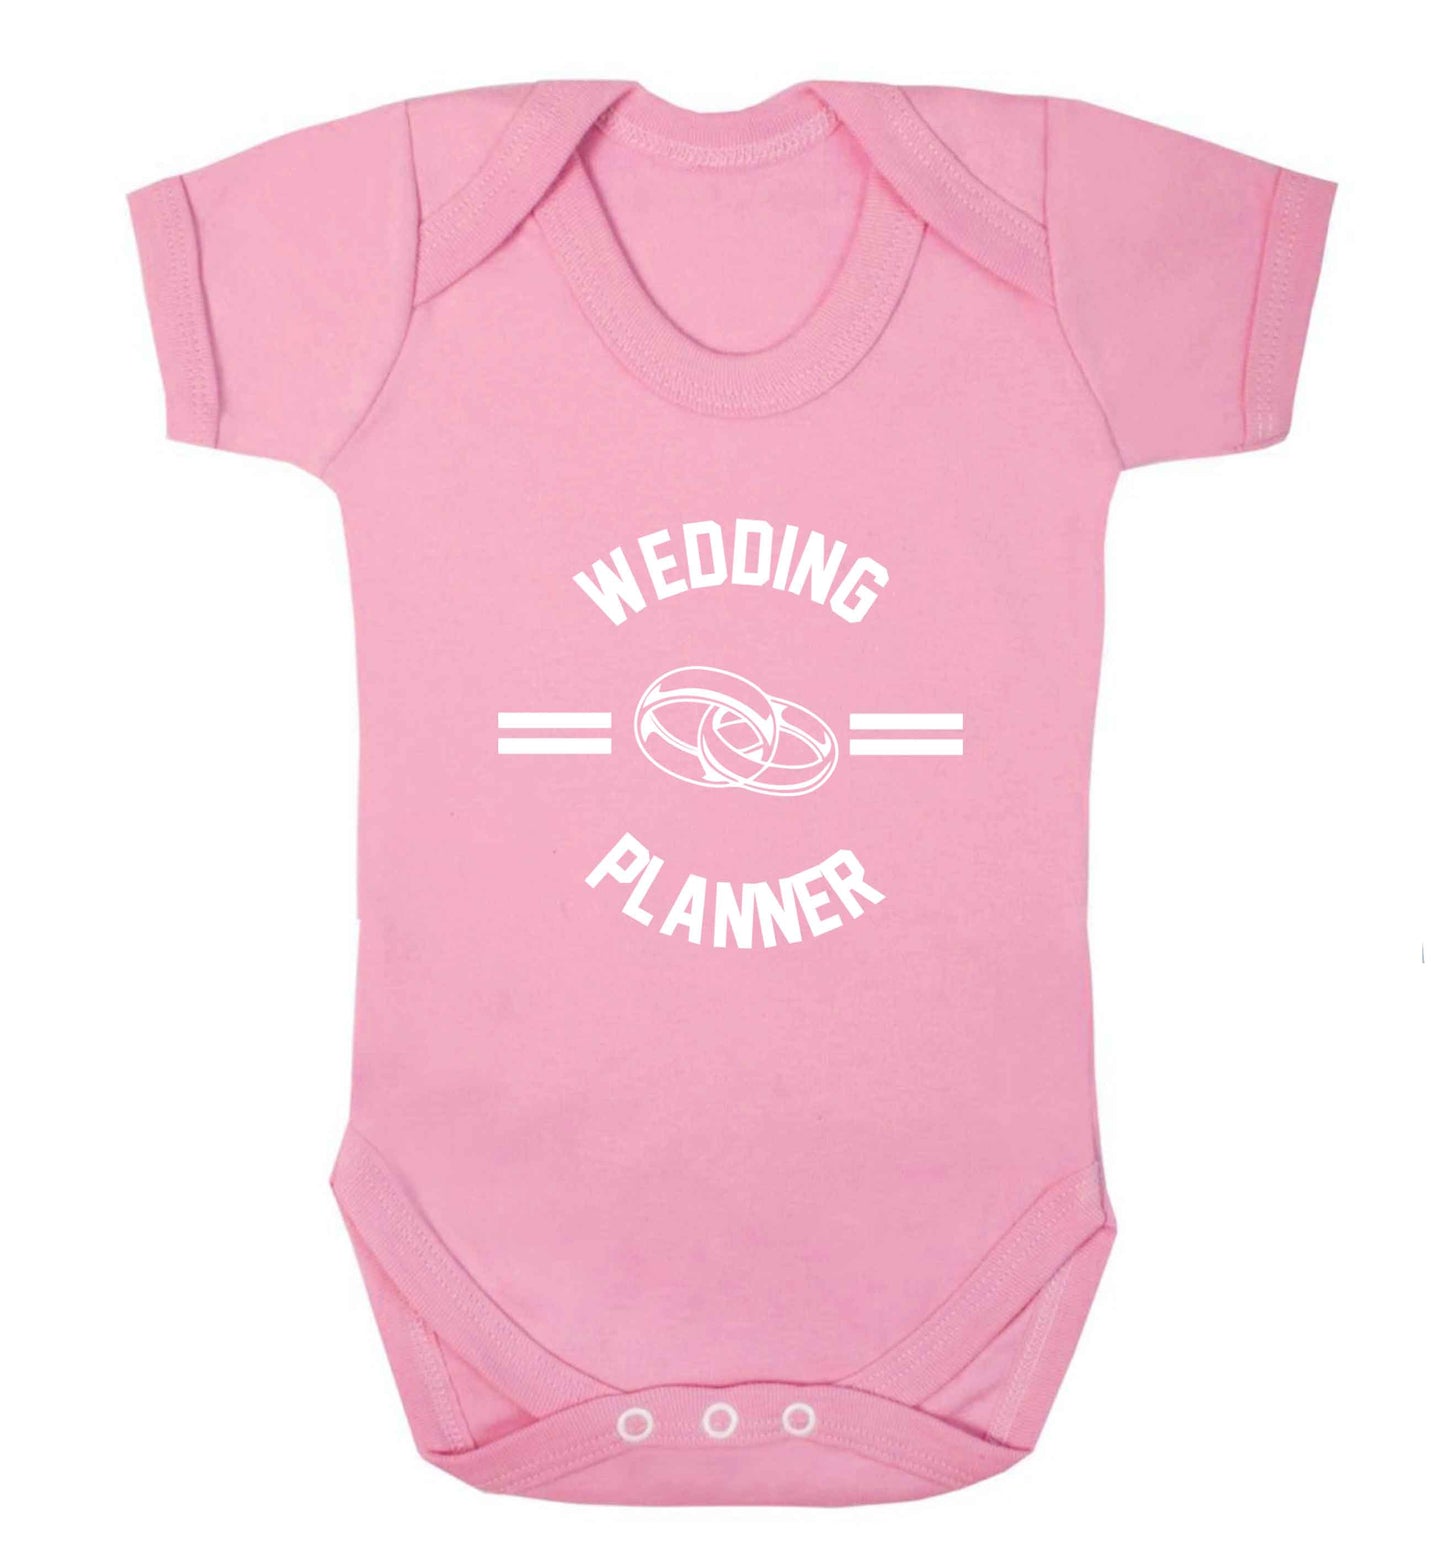 Wedding planner baby vest pale pink 18-24 months